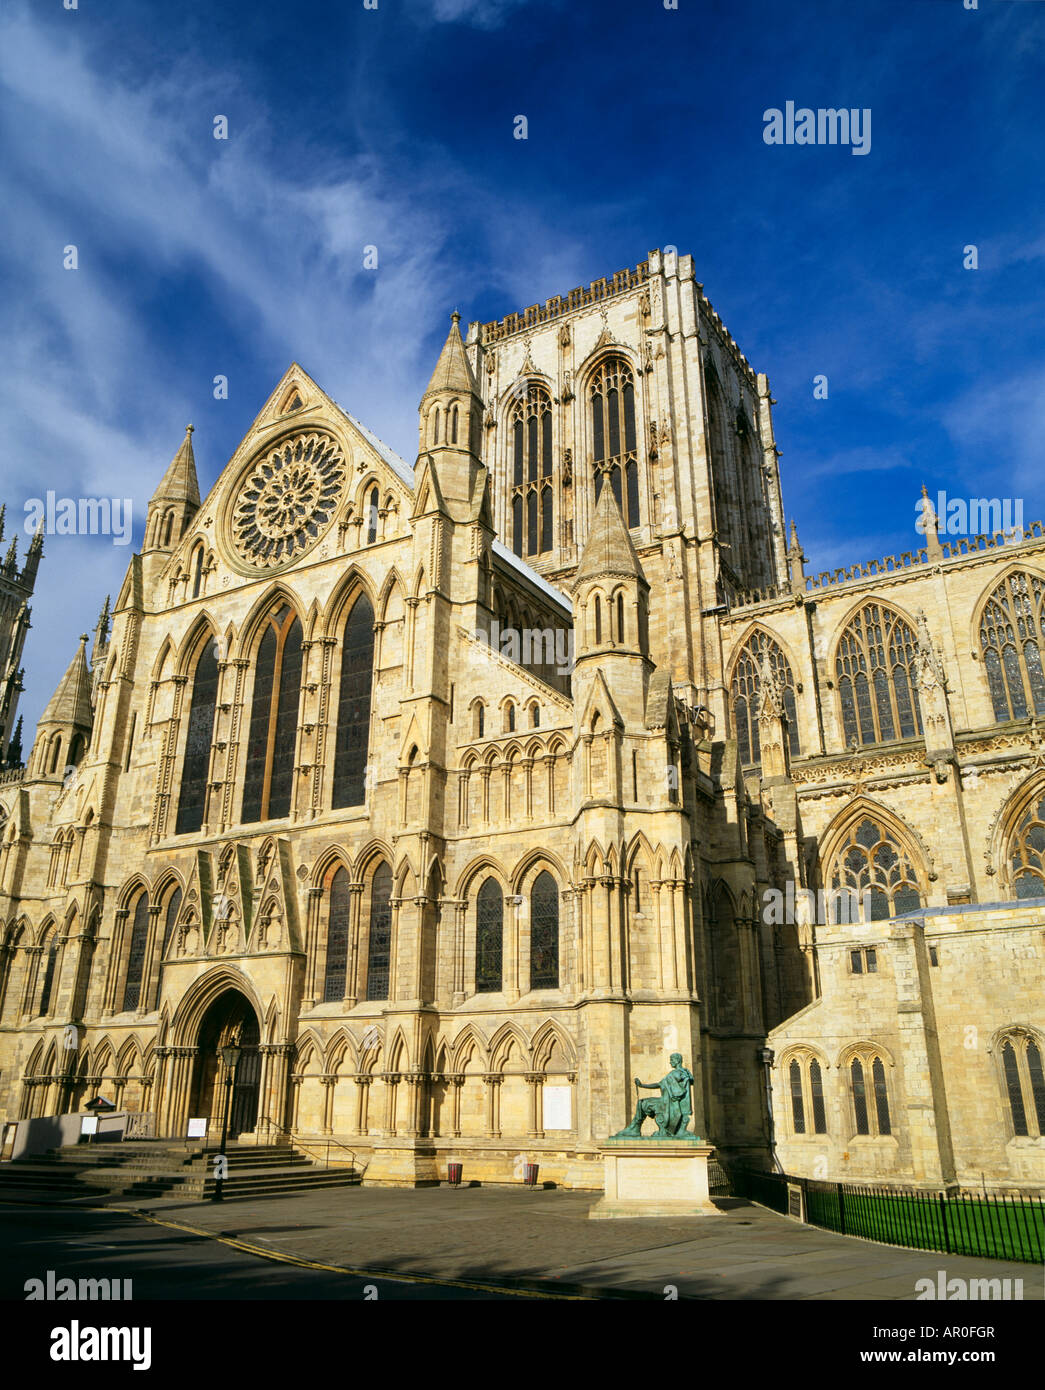 Il rosone della cattedrale di York Minster Yorkshire Regno Unito Foto Stock